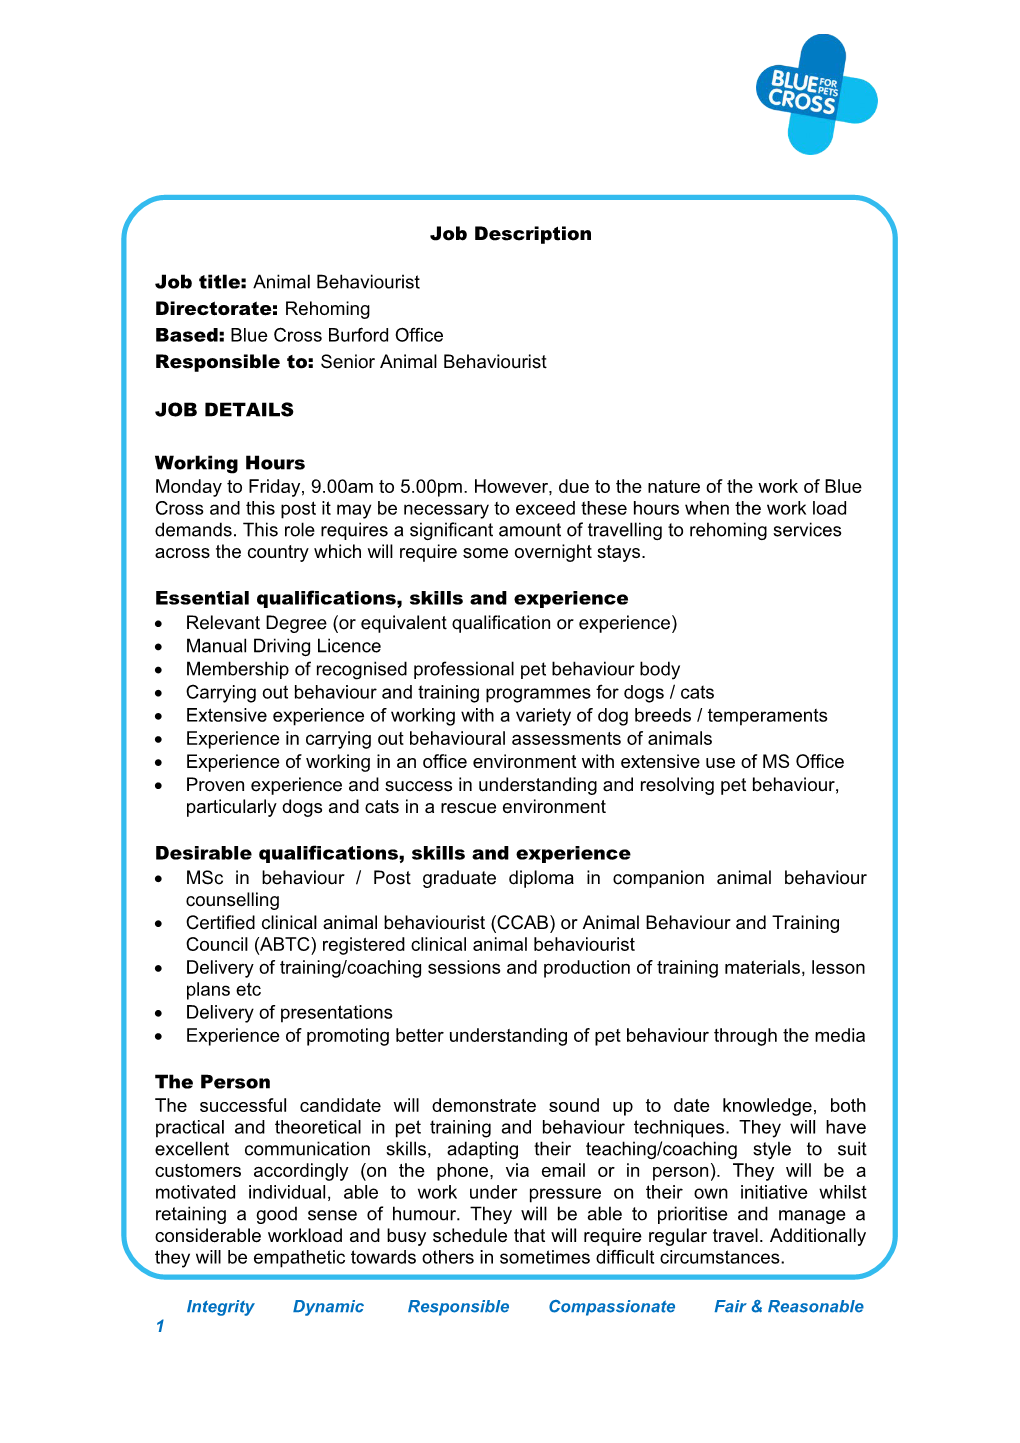 Recruitment Requisition Form s1